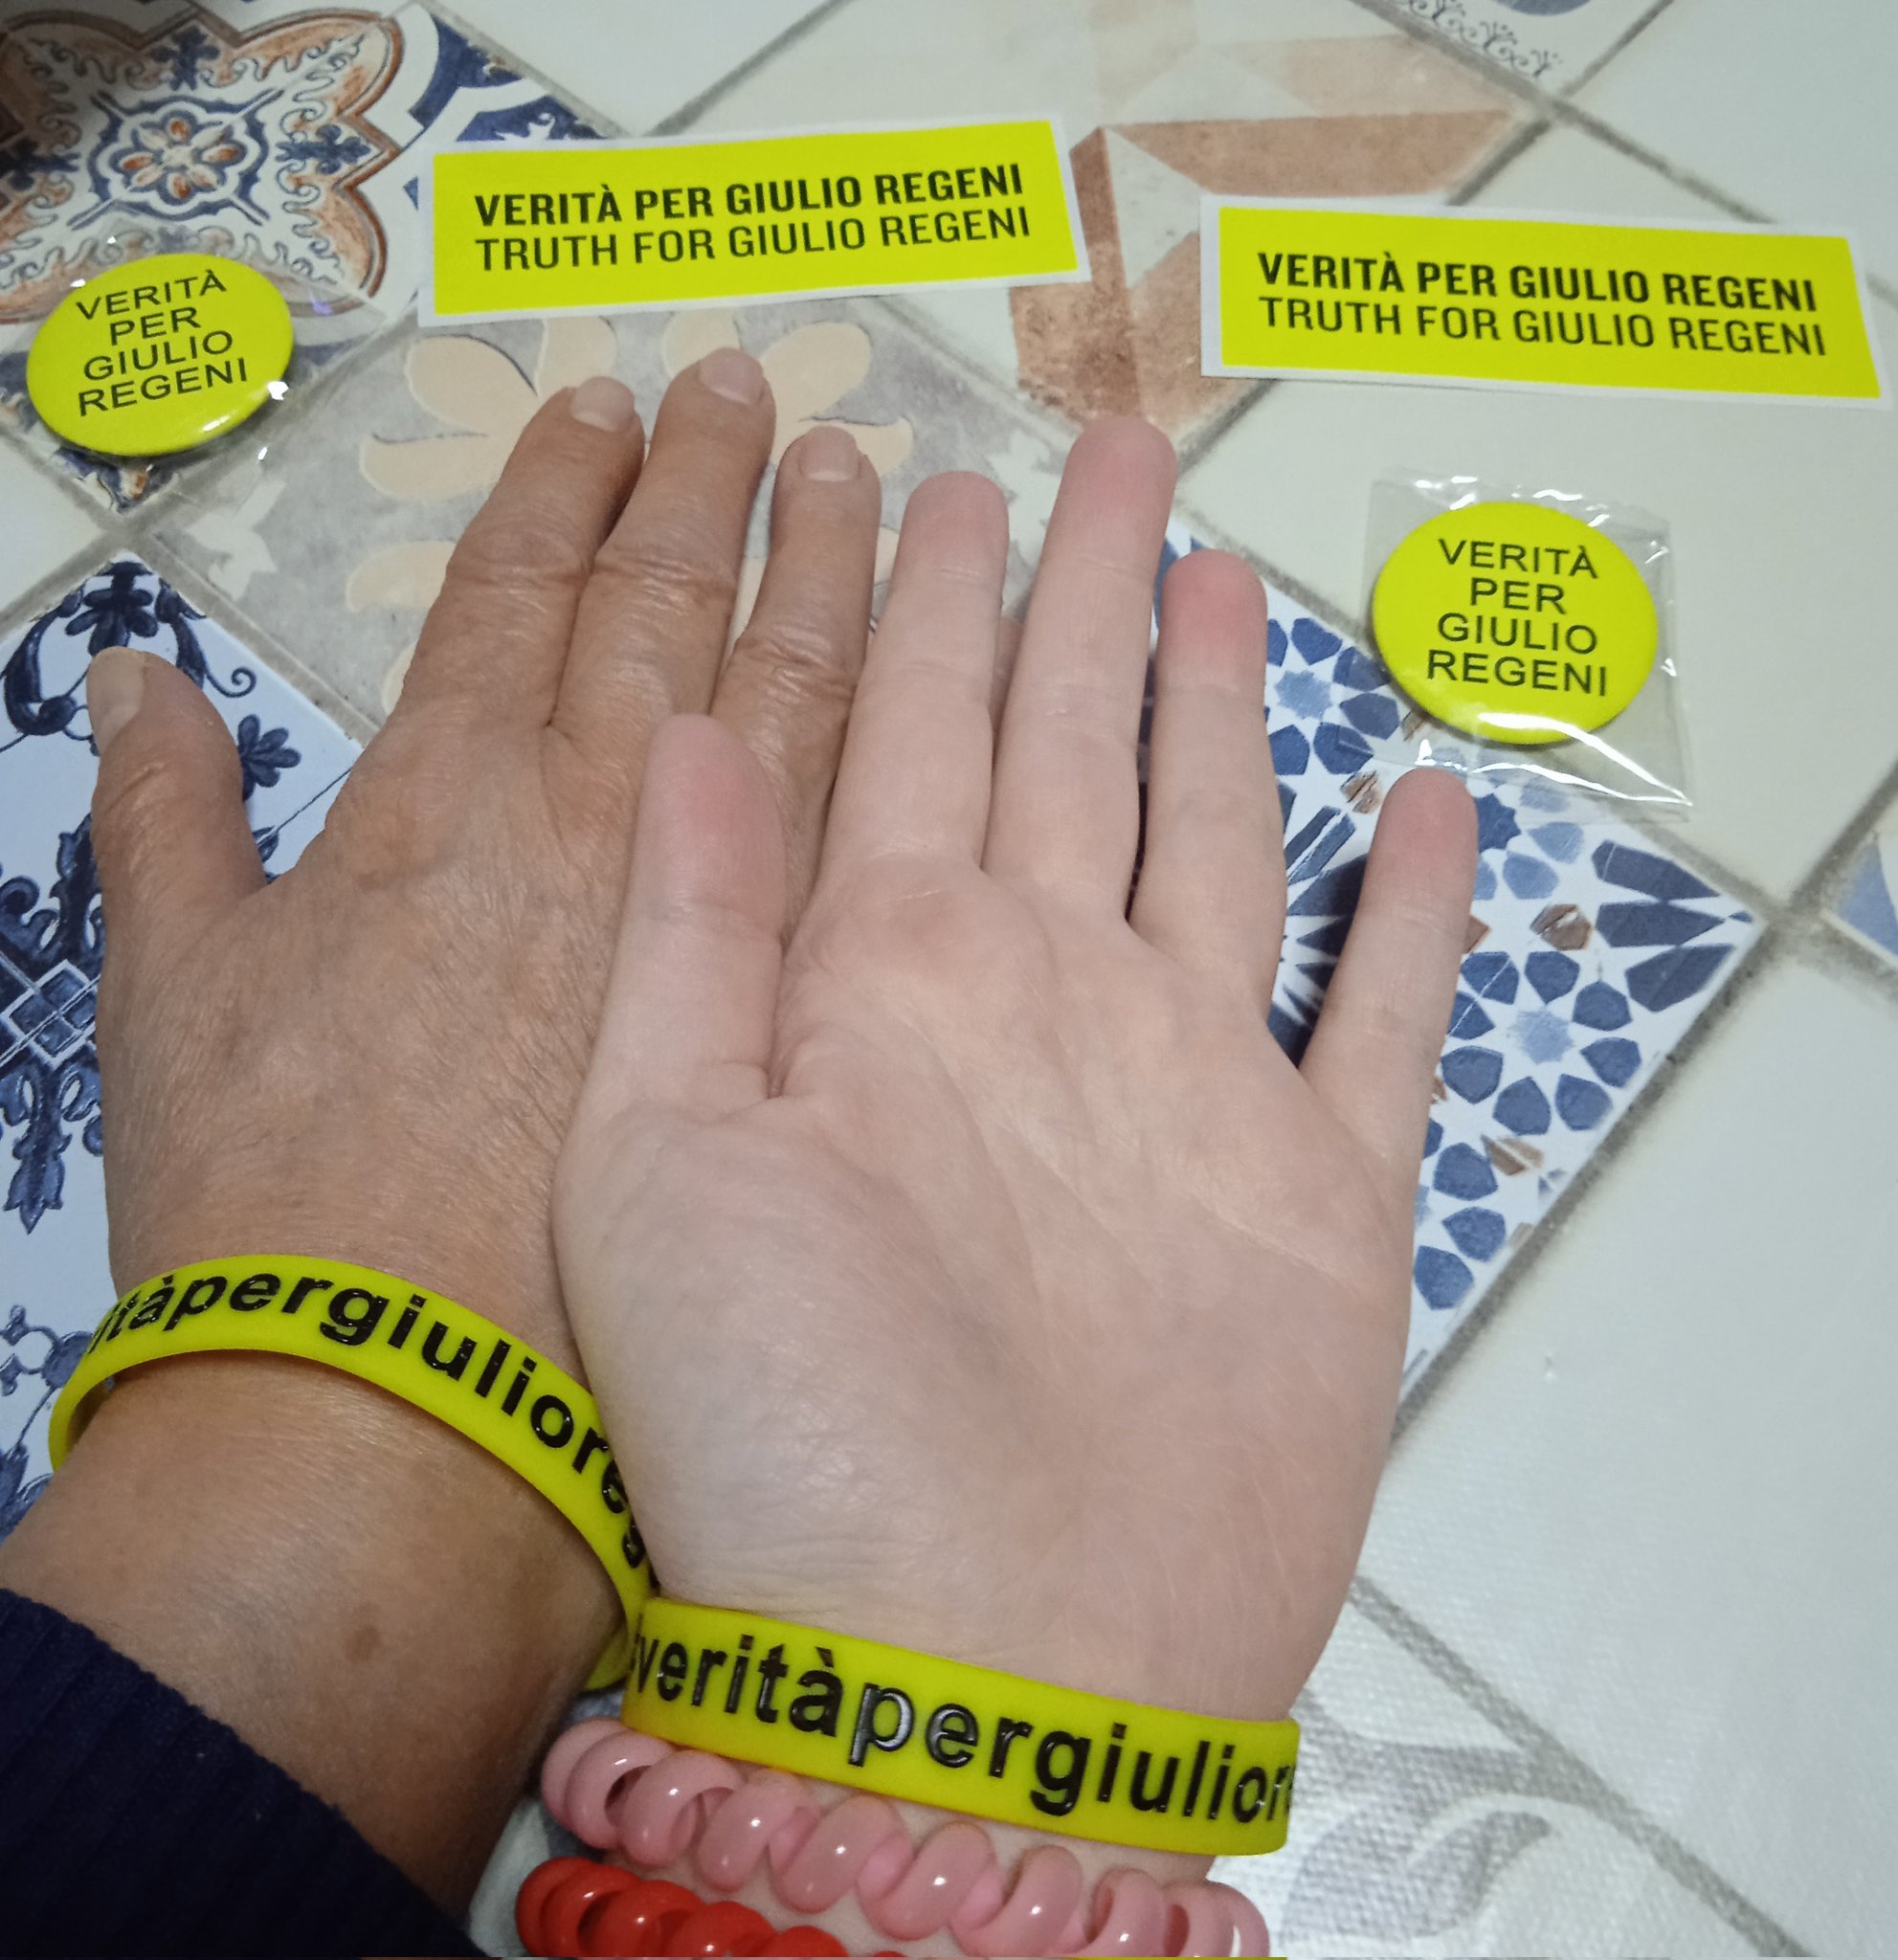 Braccialetto giallo e richiesta di Verità per Giulio Regeni / Foto: Twitter